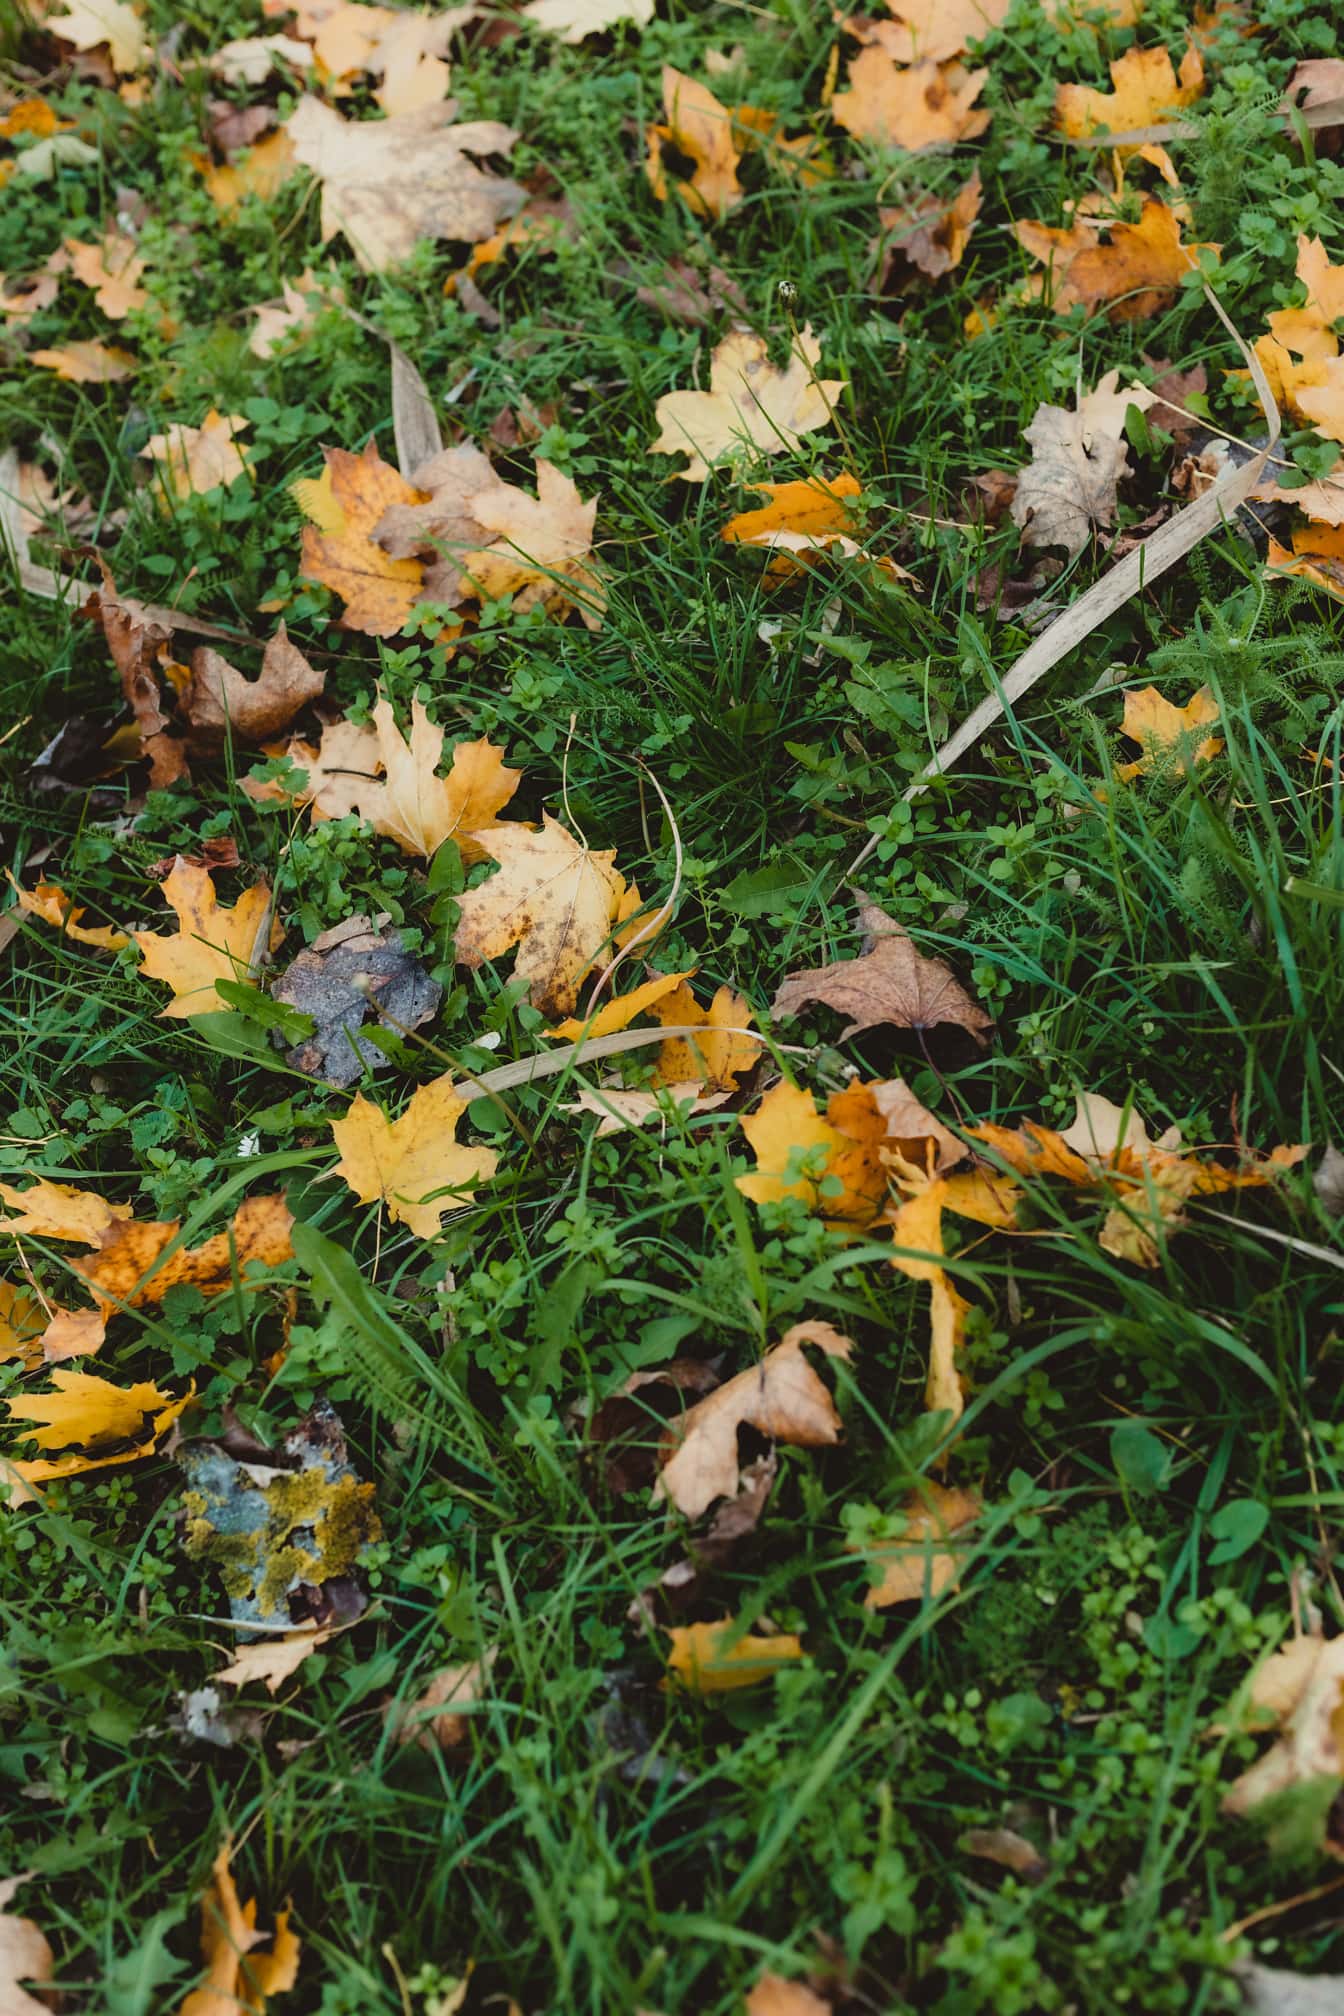 Kuru akçaağaç yaprakları ile sonbahar mevsiminde koyu kırmızı çimen